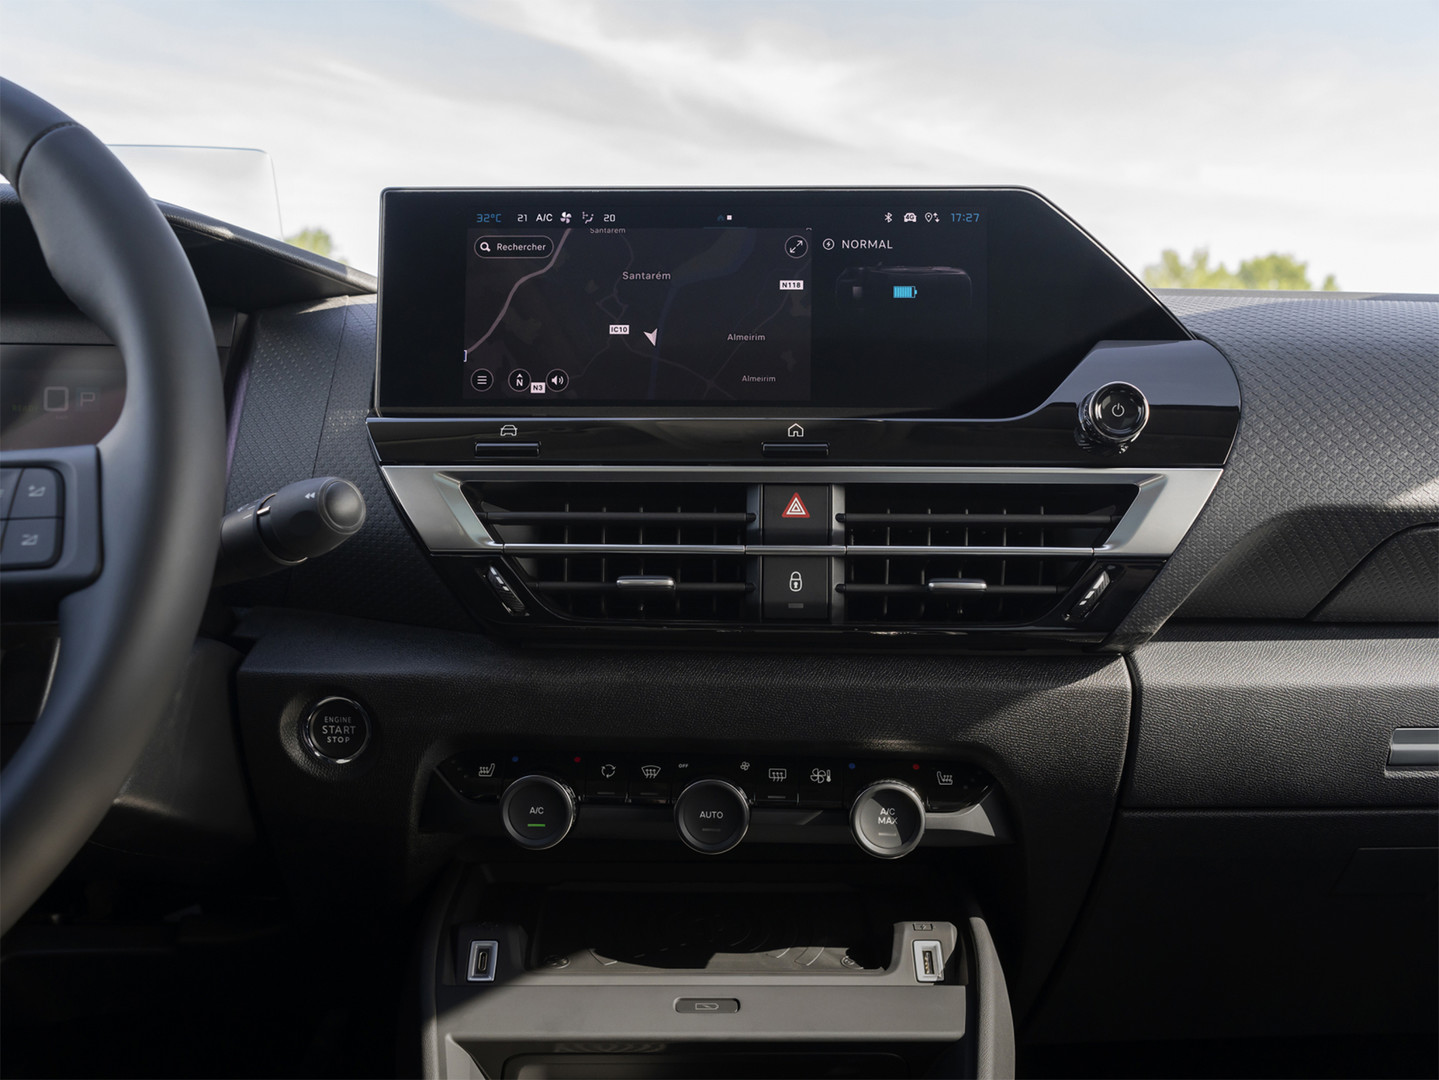 Interfaccia del touchpad di una Citroën C4X